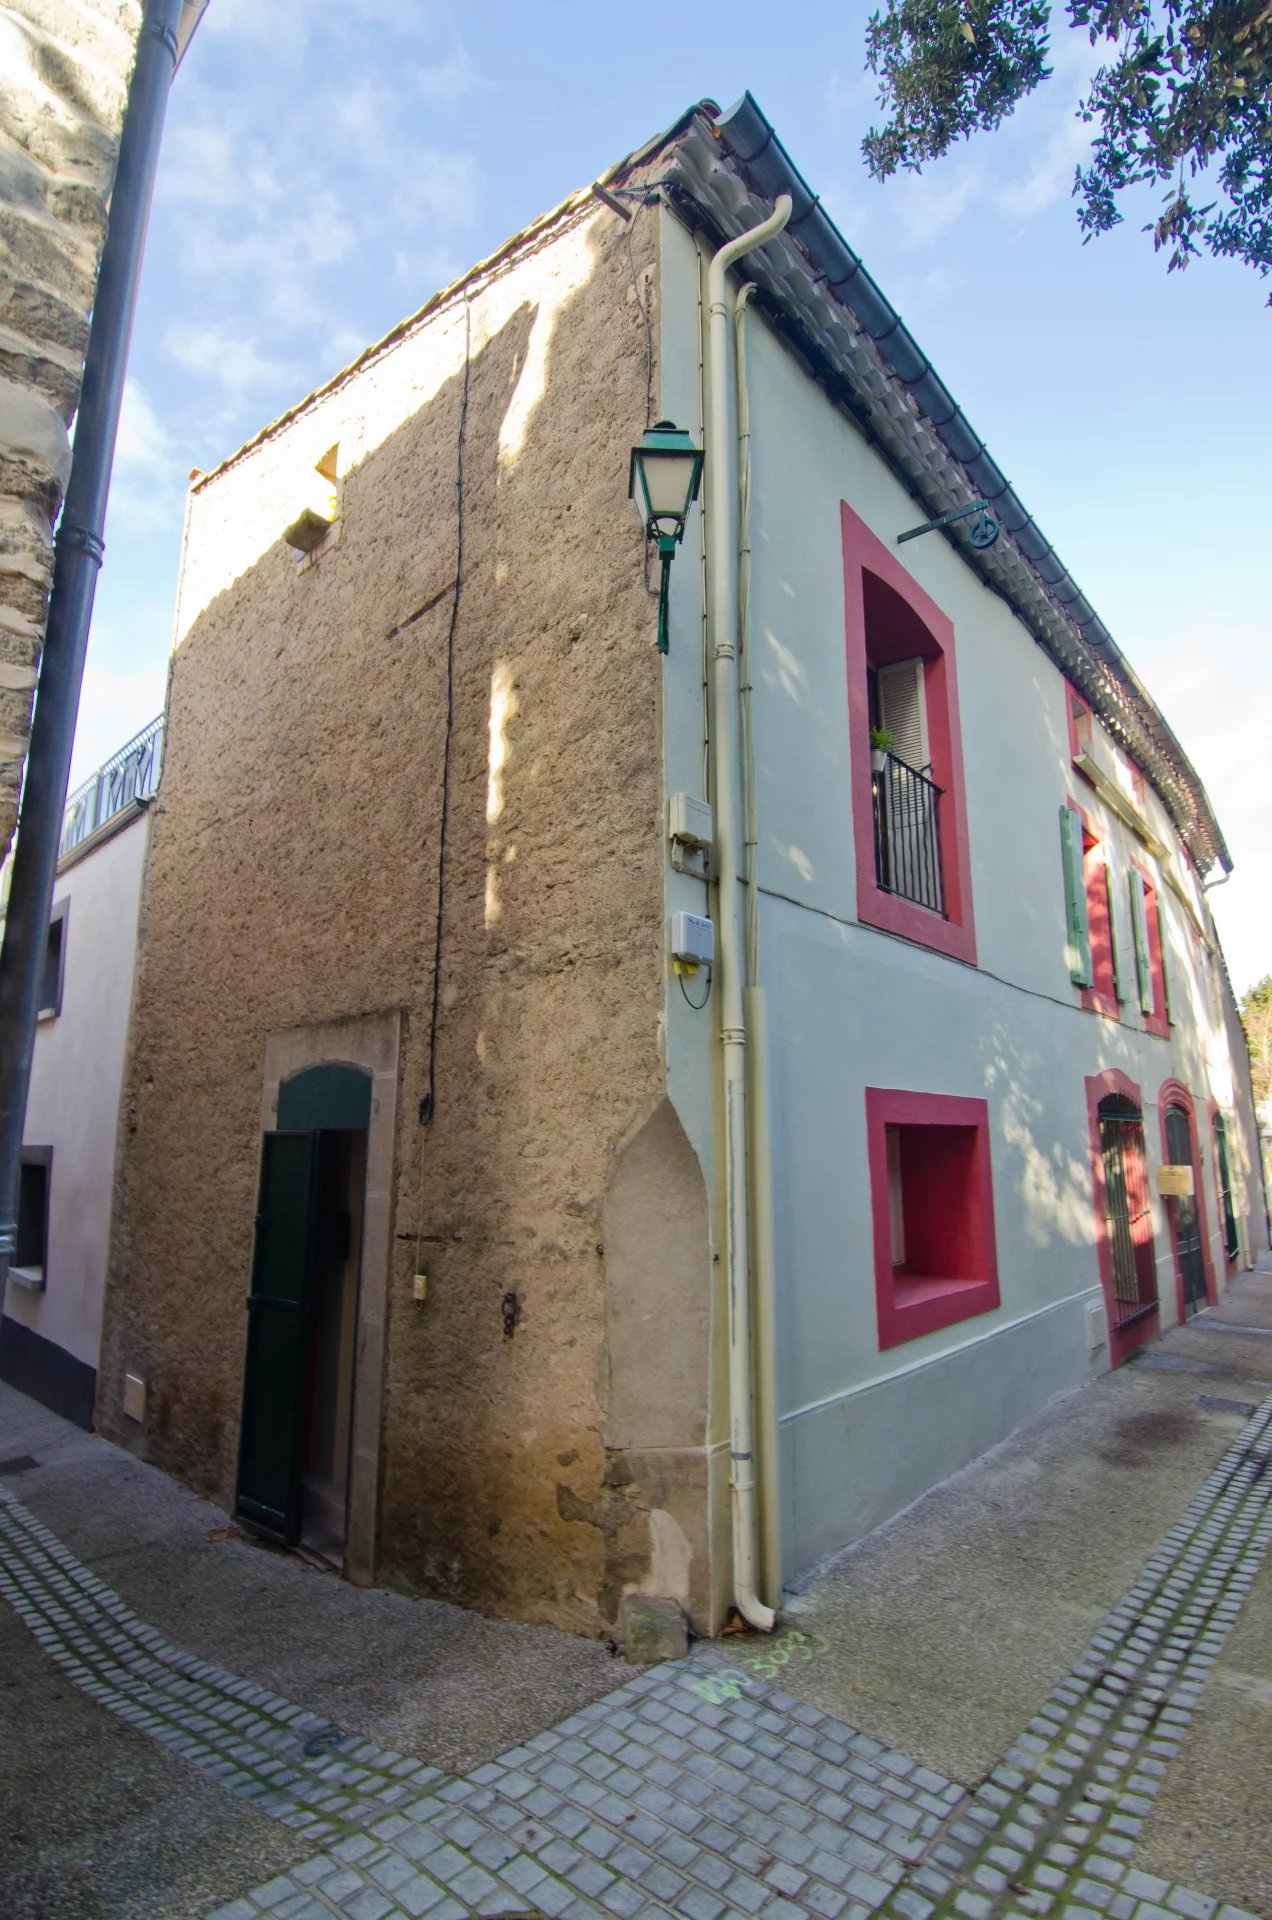 Maison de village - 10 min est de Carcassonne 2 etages avec mezzanine